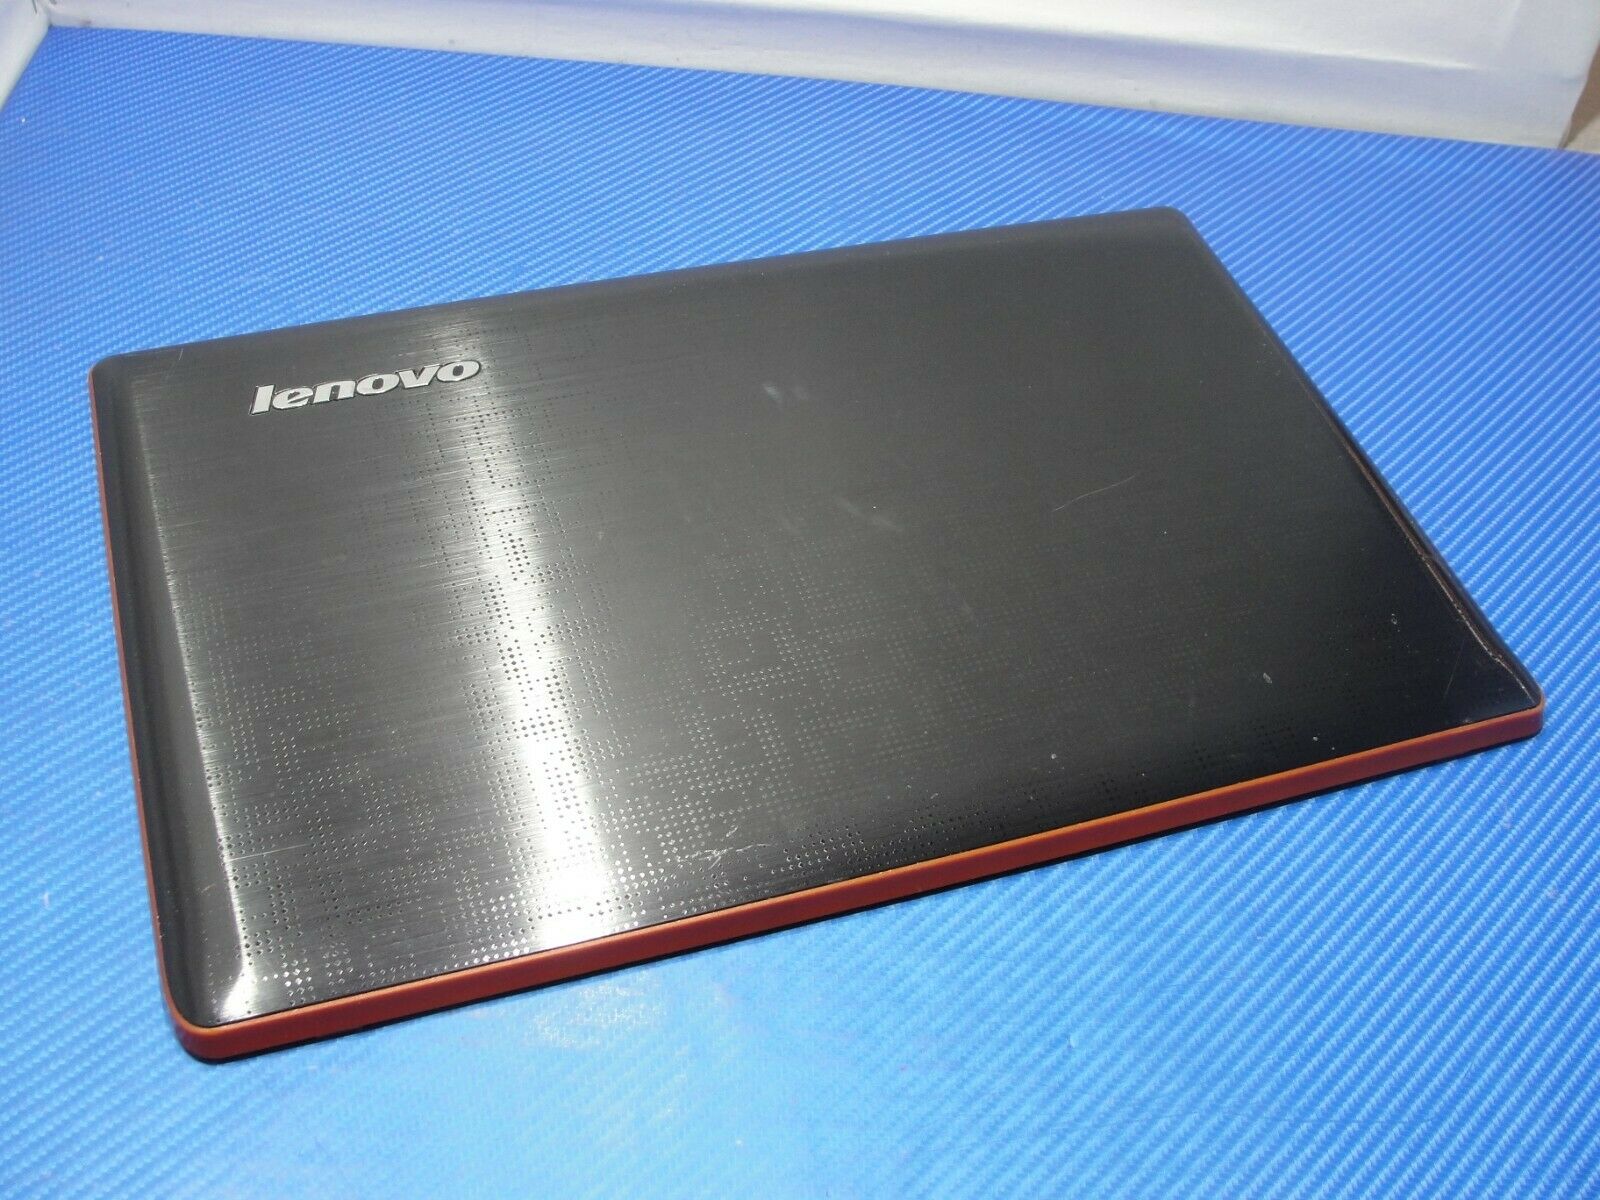 Lenovo Ideapad Y570 15.6